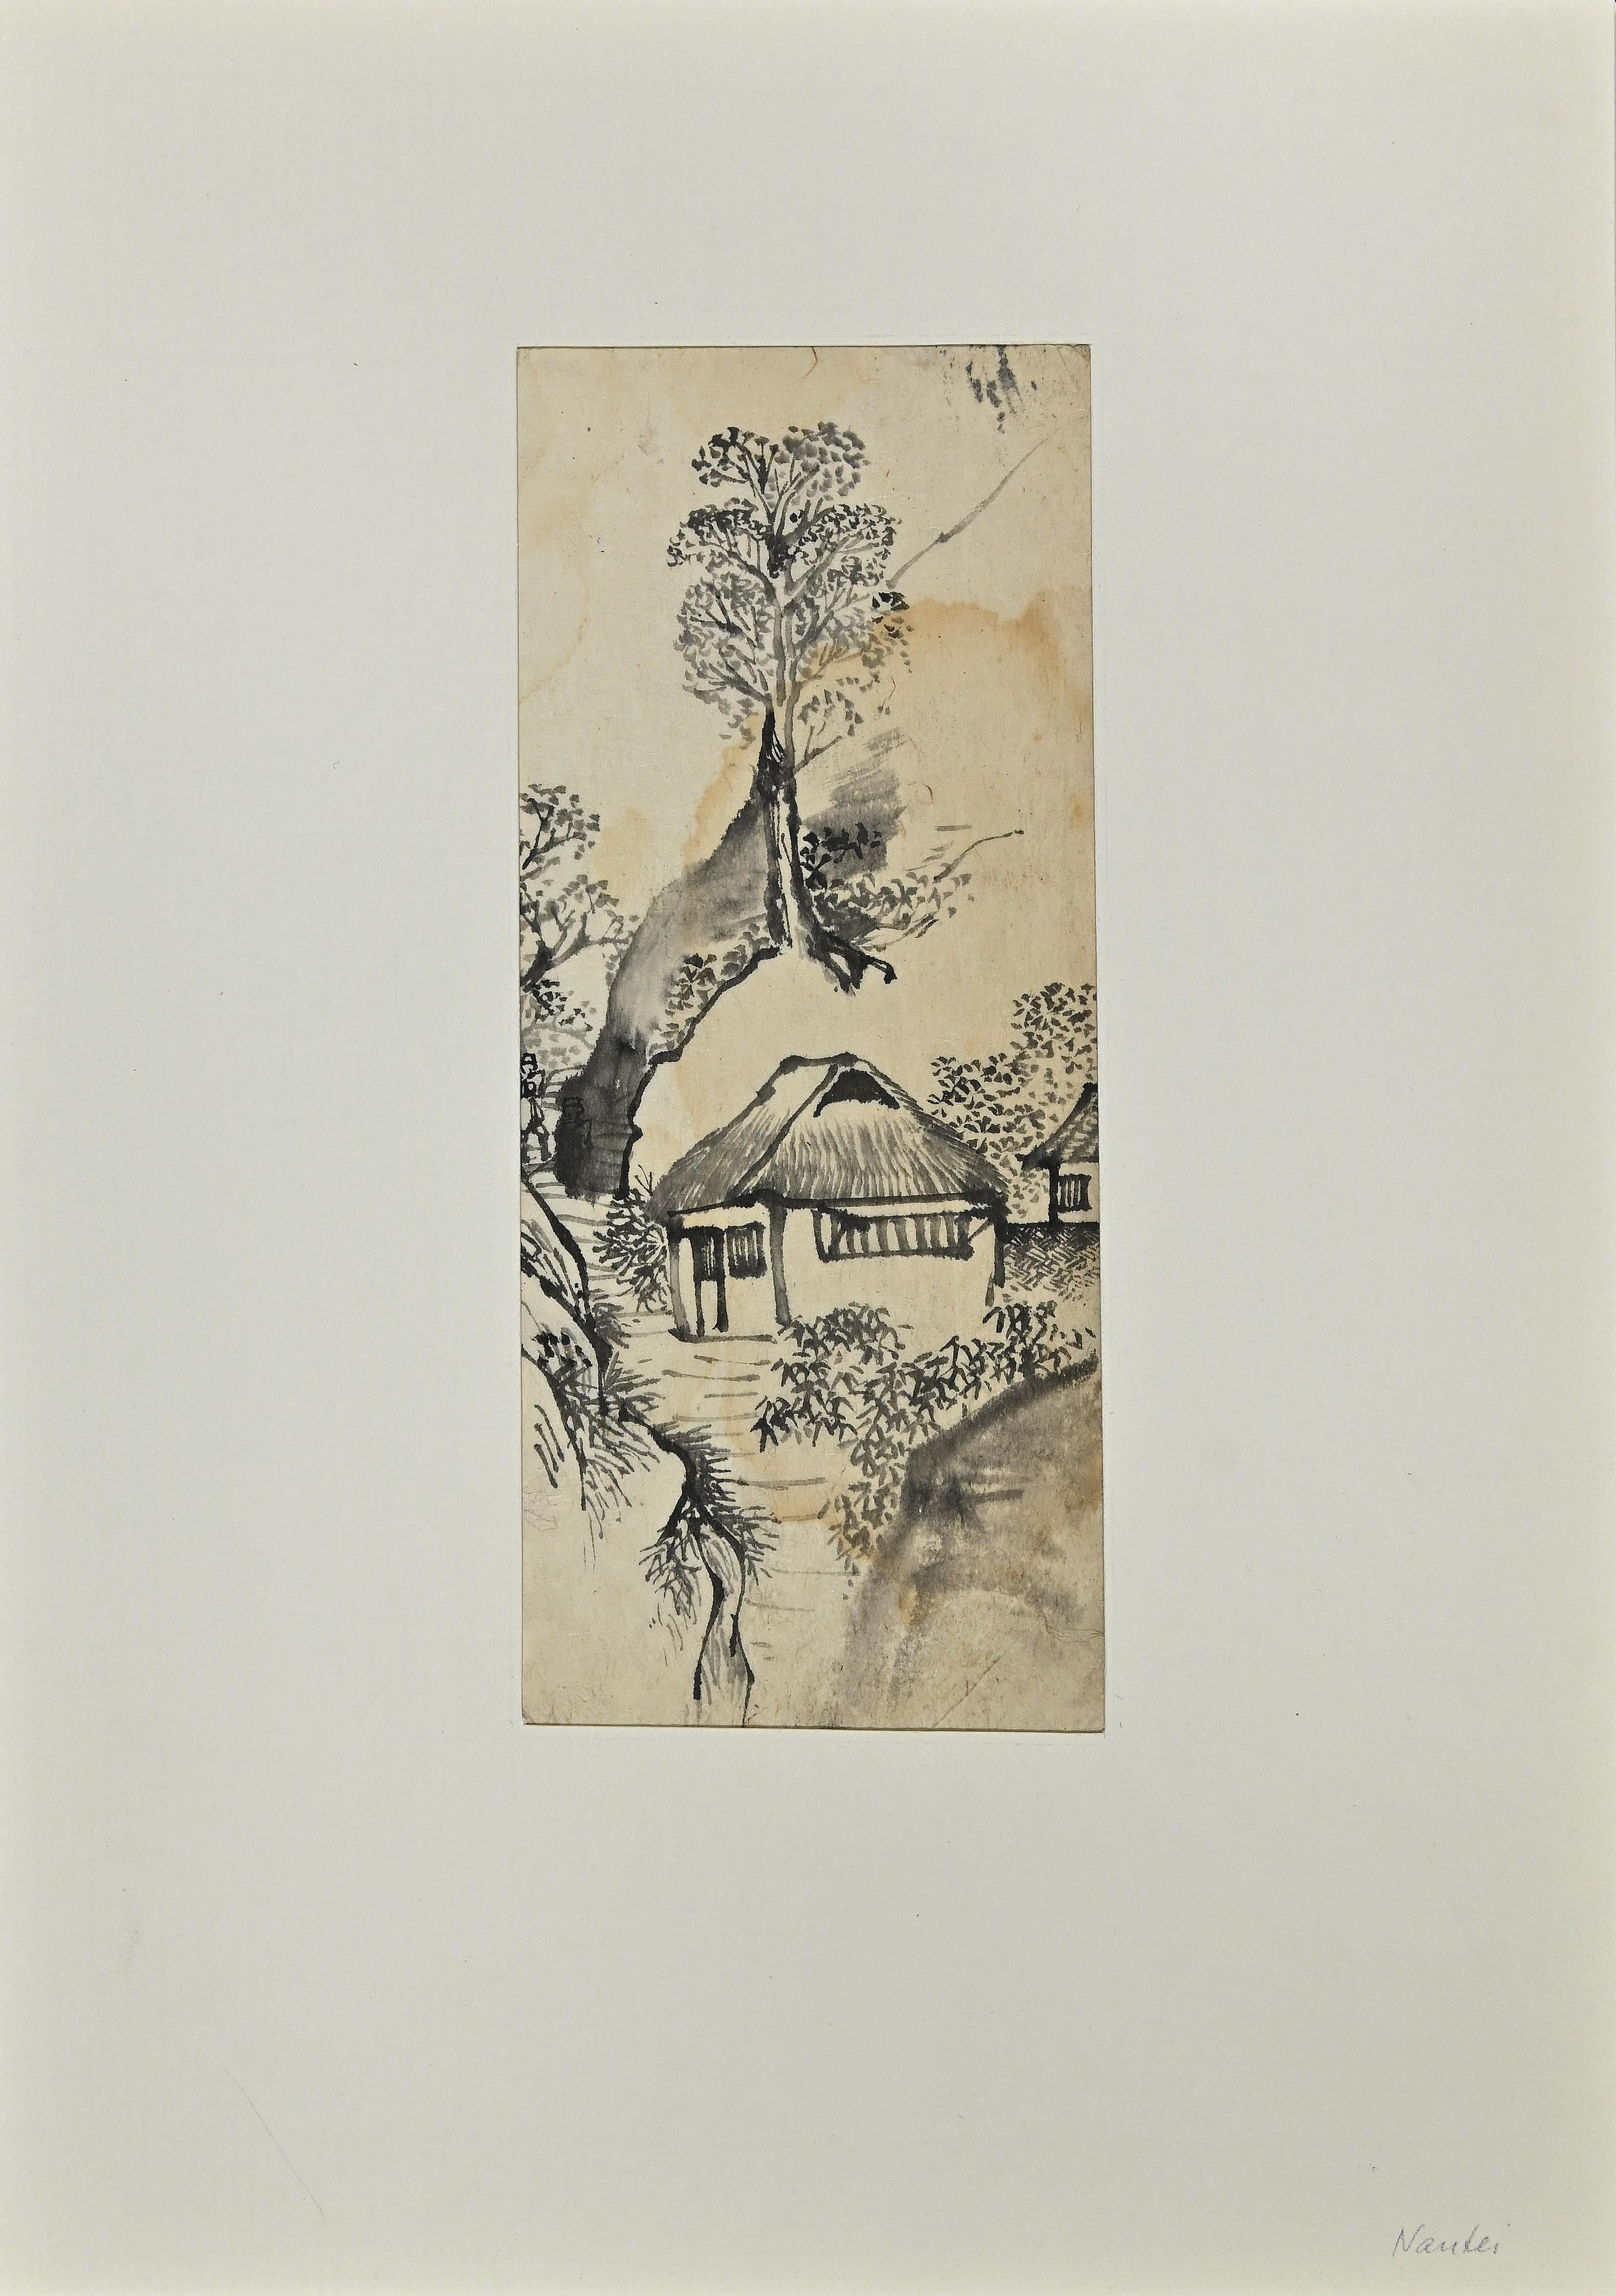 Das Dorf ist eine schwarze Tuschezeichnung, die Nishimura Nantei im frühen 19. Jahrhundert zugeschrieben wird.

Gute Bedingungen.

Das Kunstwerk wird mit weichen Strichen in einer ausgewogenen Komposition dargestellt.